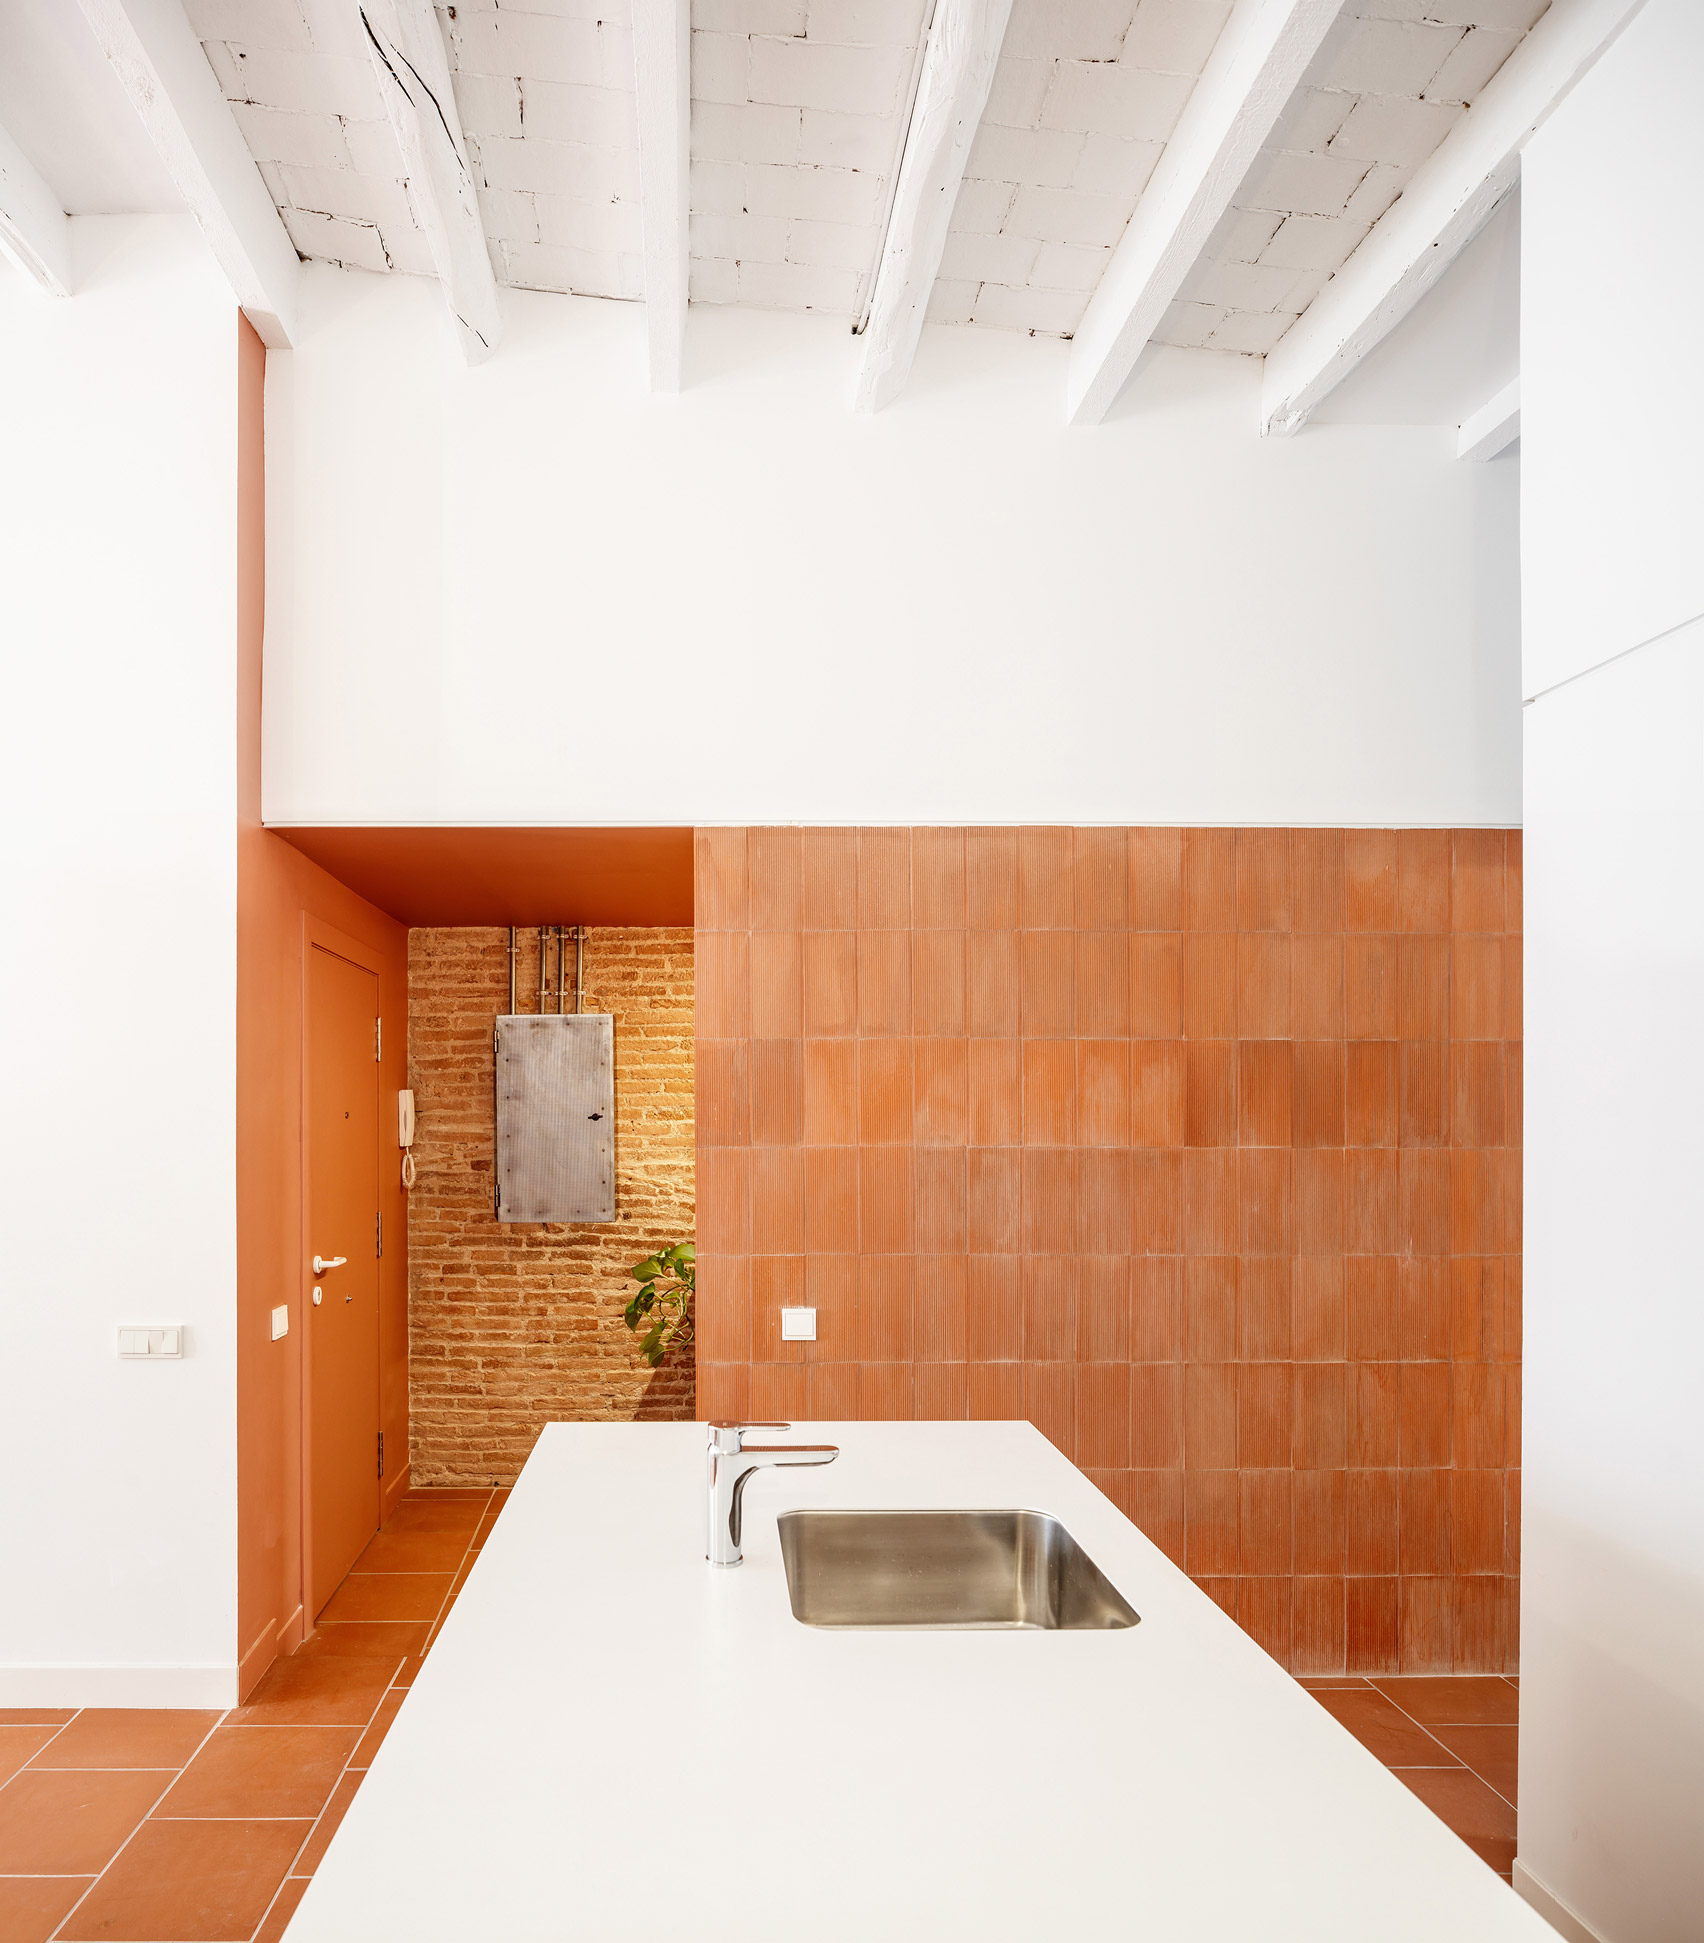 Interiors of La Odette apartment by Crü